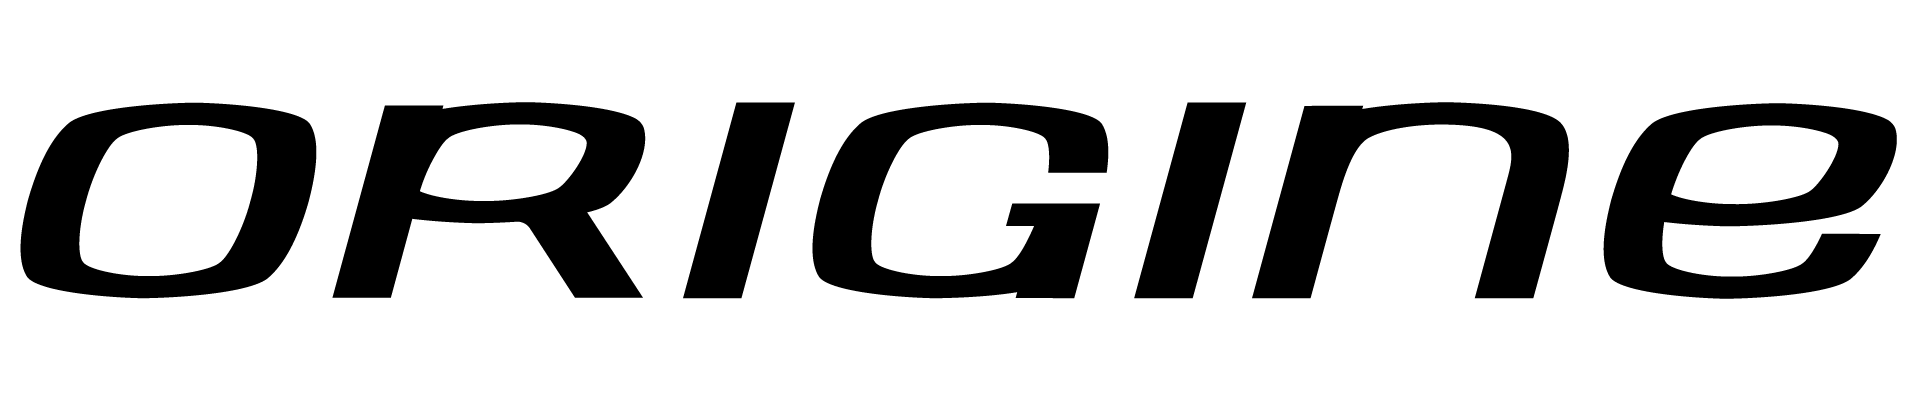 logo origine noir